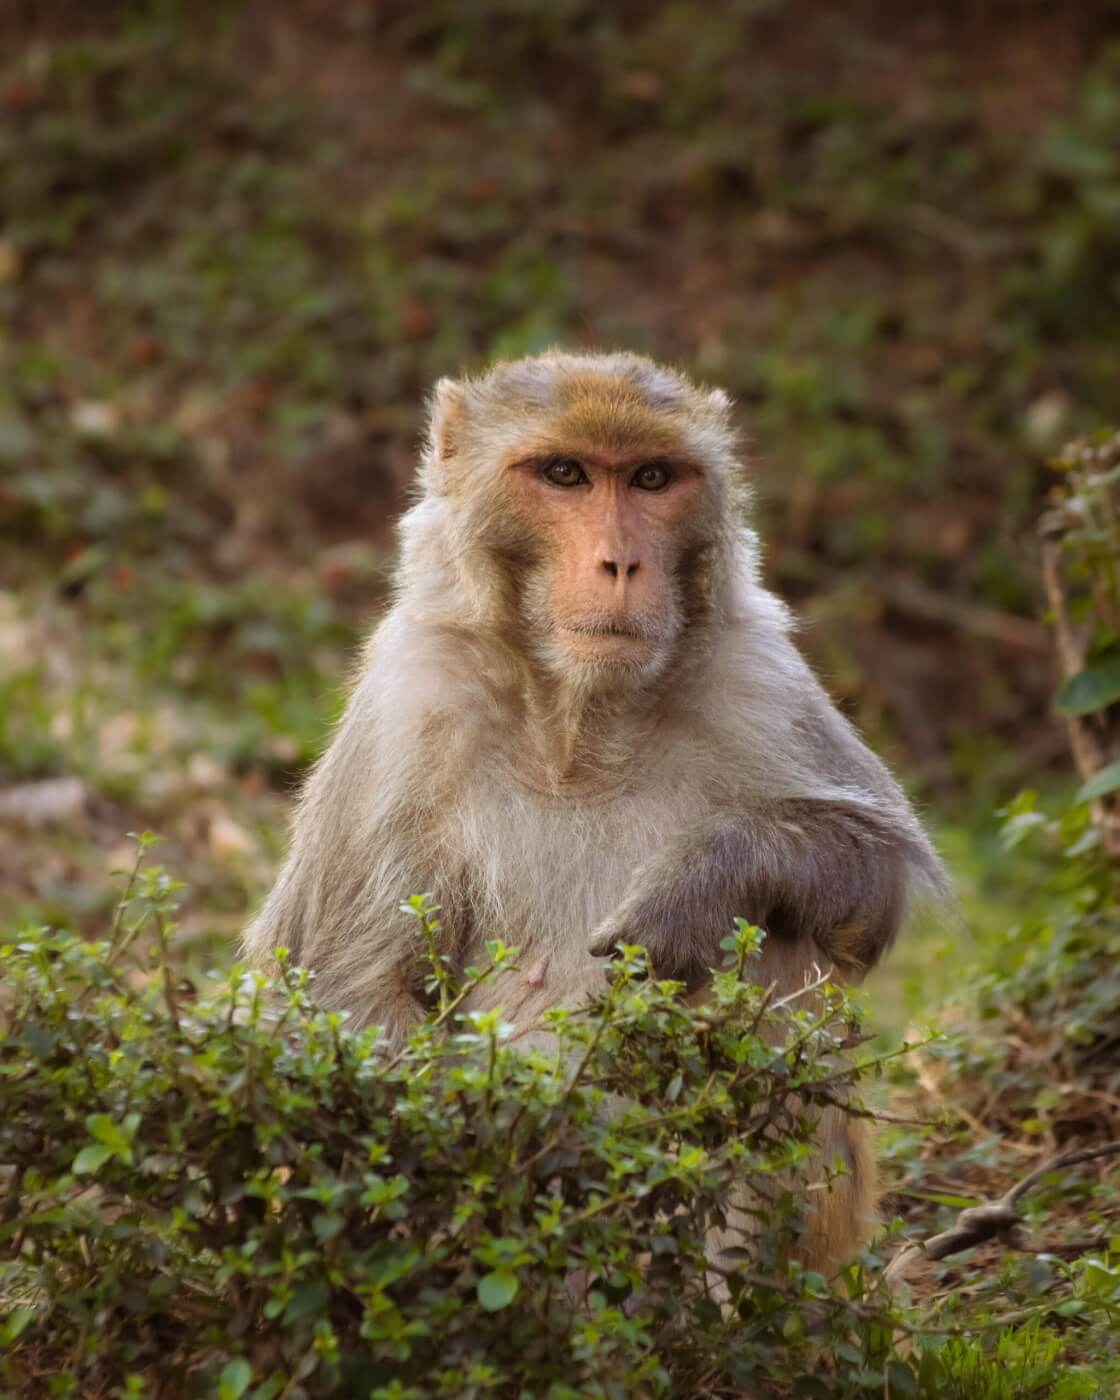 विदेशी पशु प्रयोगकर्ताओं के कारण खतरे के साये में जी रहे भारतीय बंदरों को सुरक्षा की जरूरत है